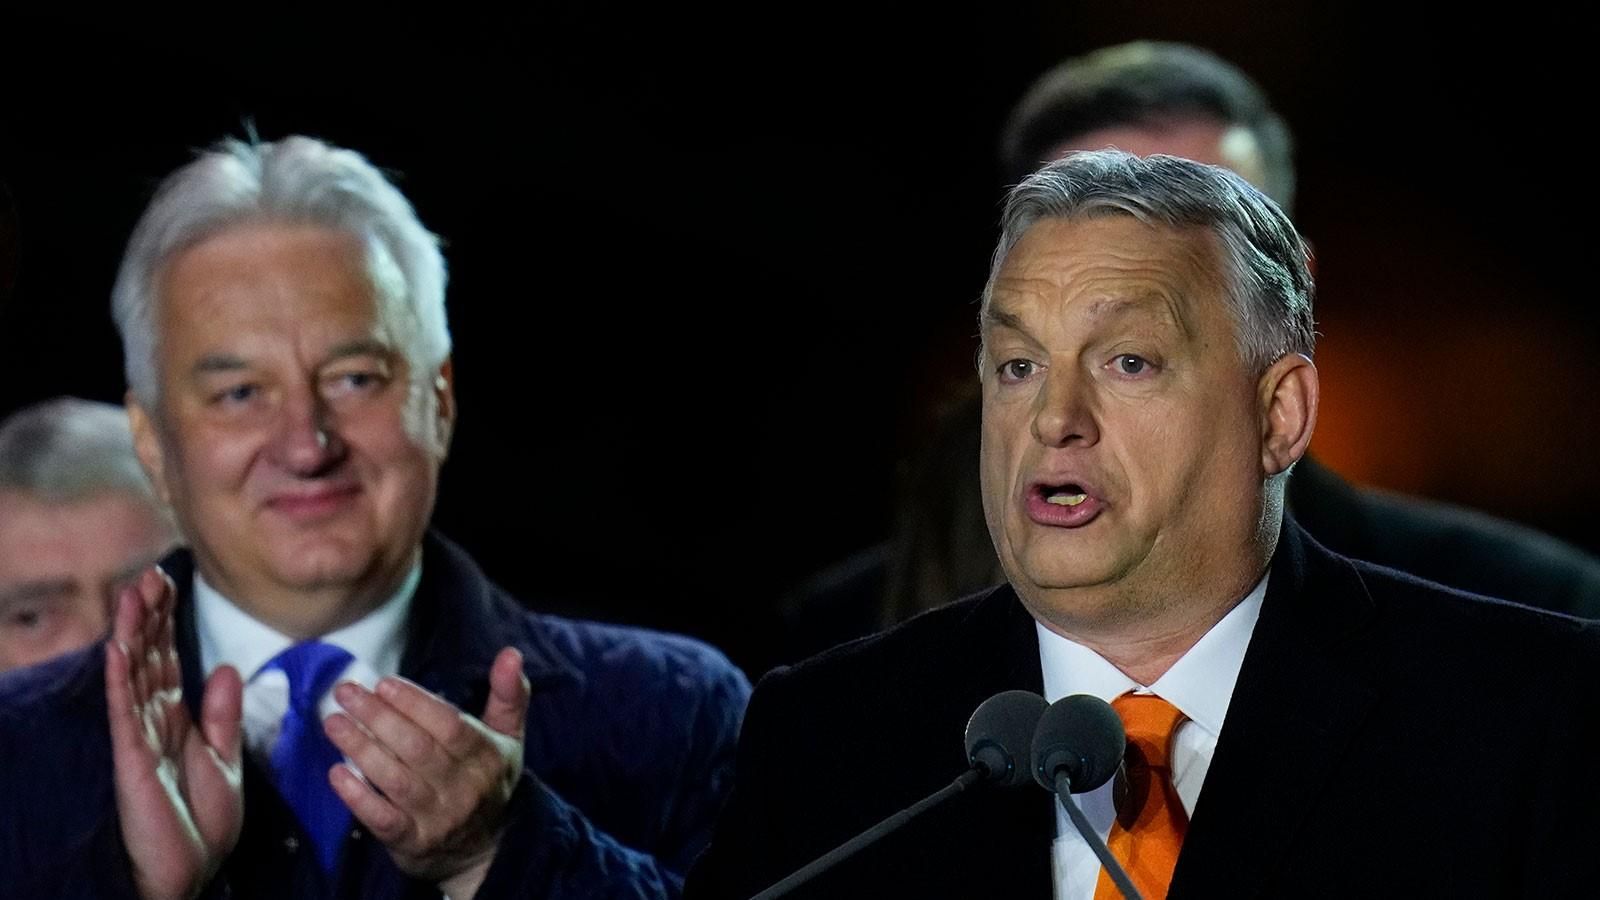 Орбан объявил о своей победе на выборах в Венгрии и назвал Зеленского "оппонентом"